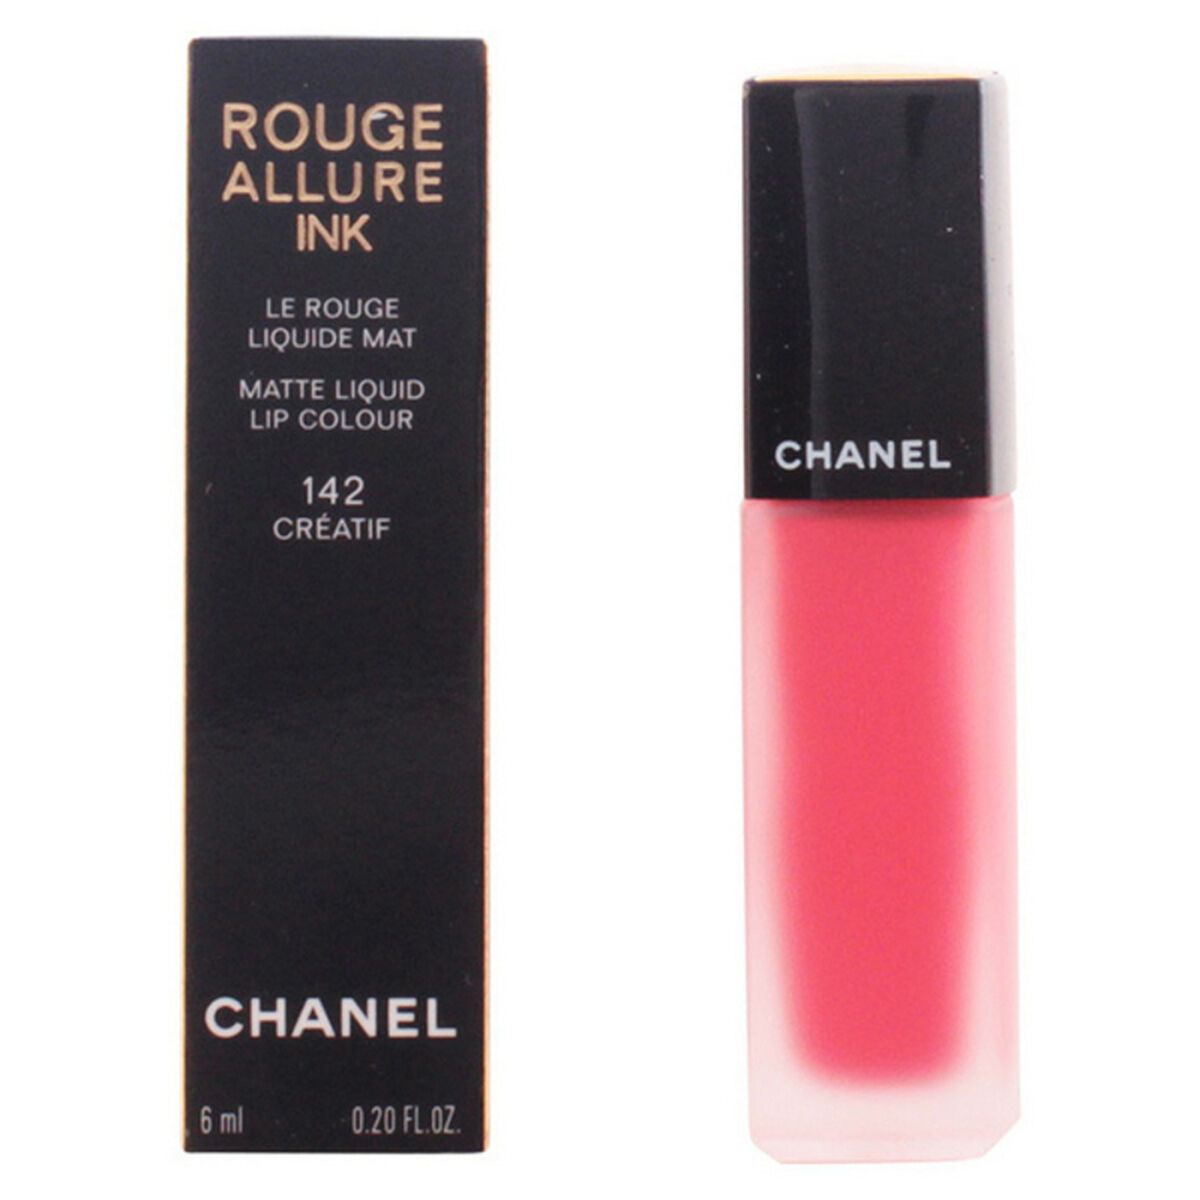 Rouge à lèvres Rouge Allure Encre Chanel